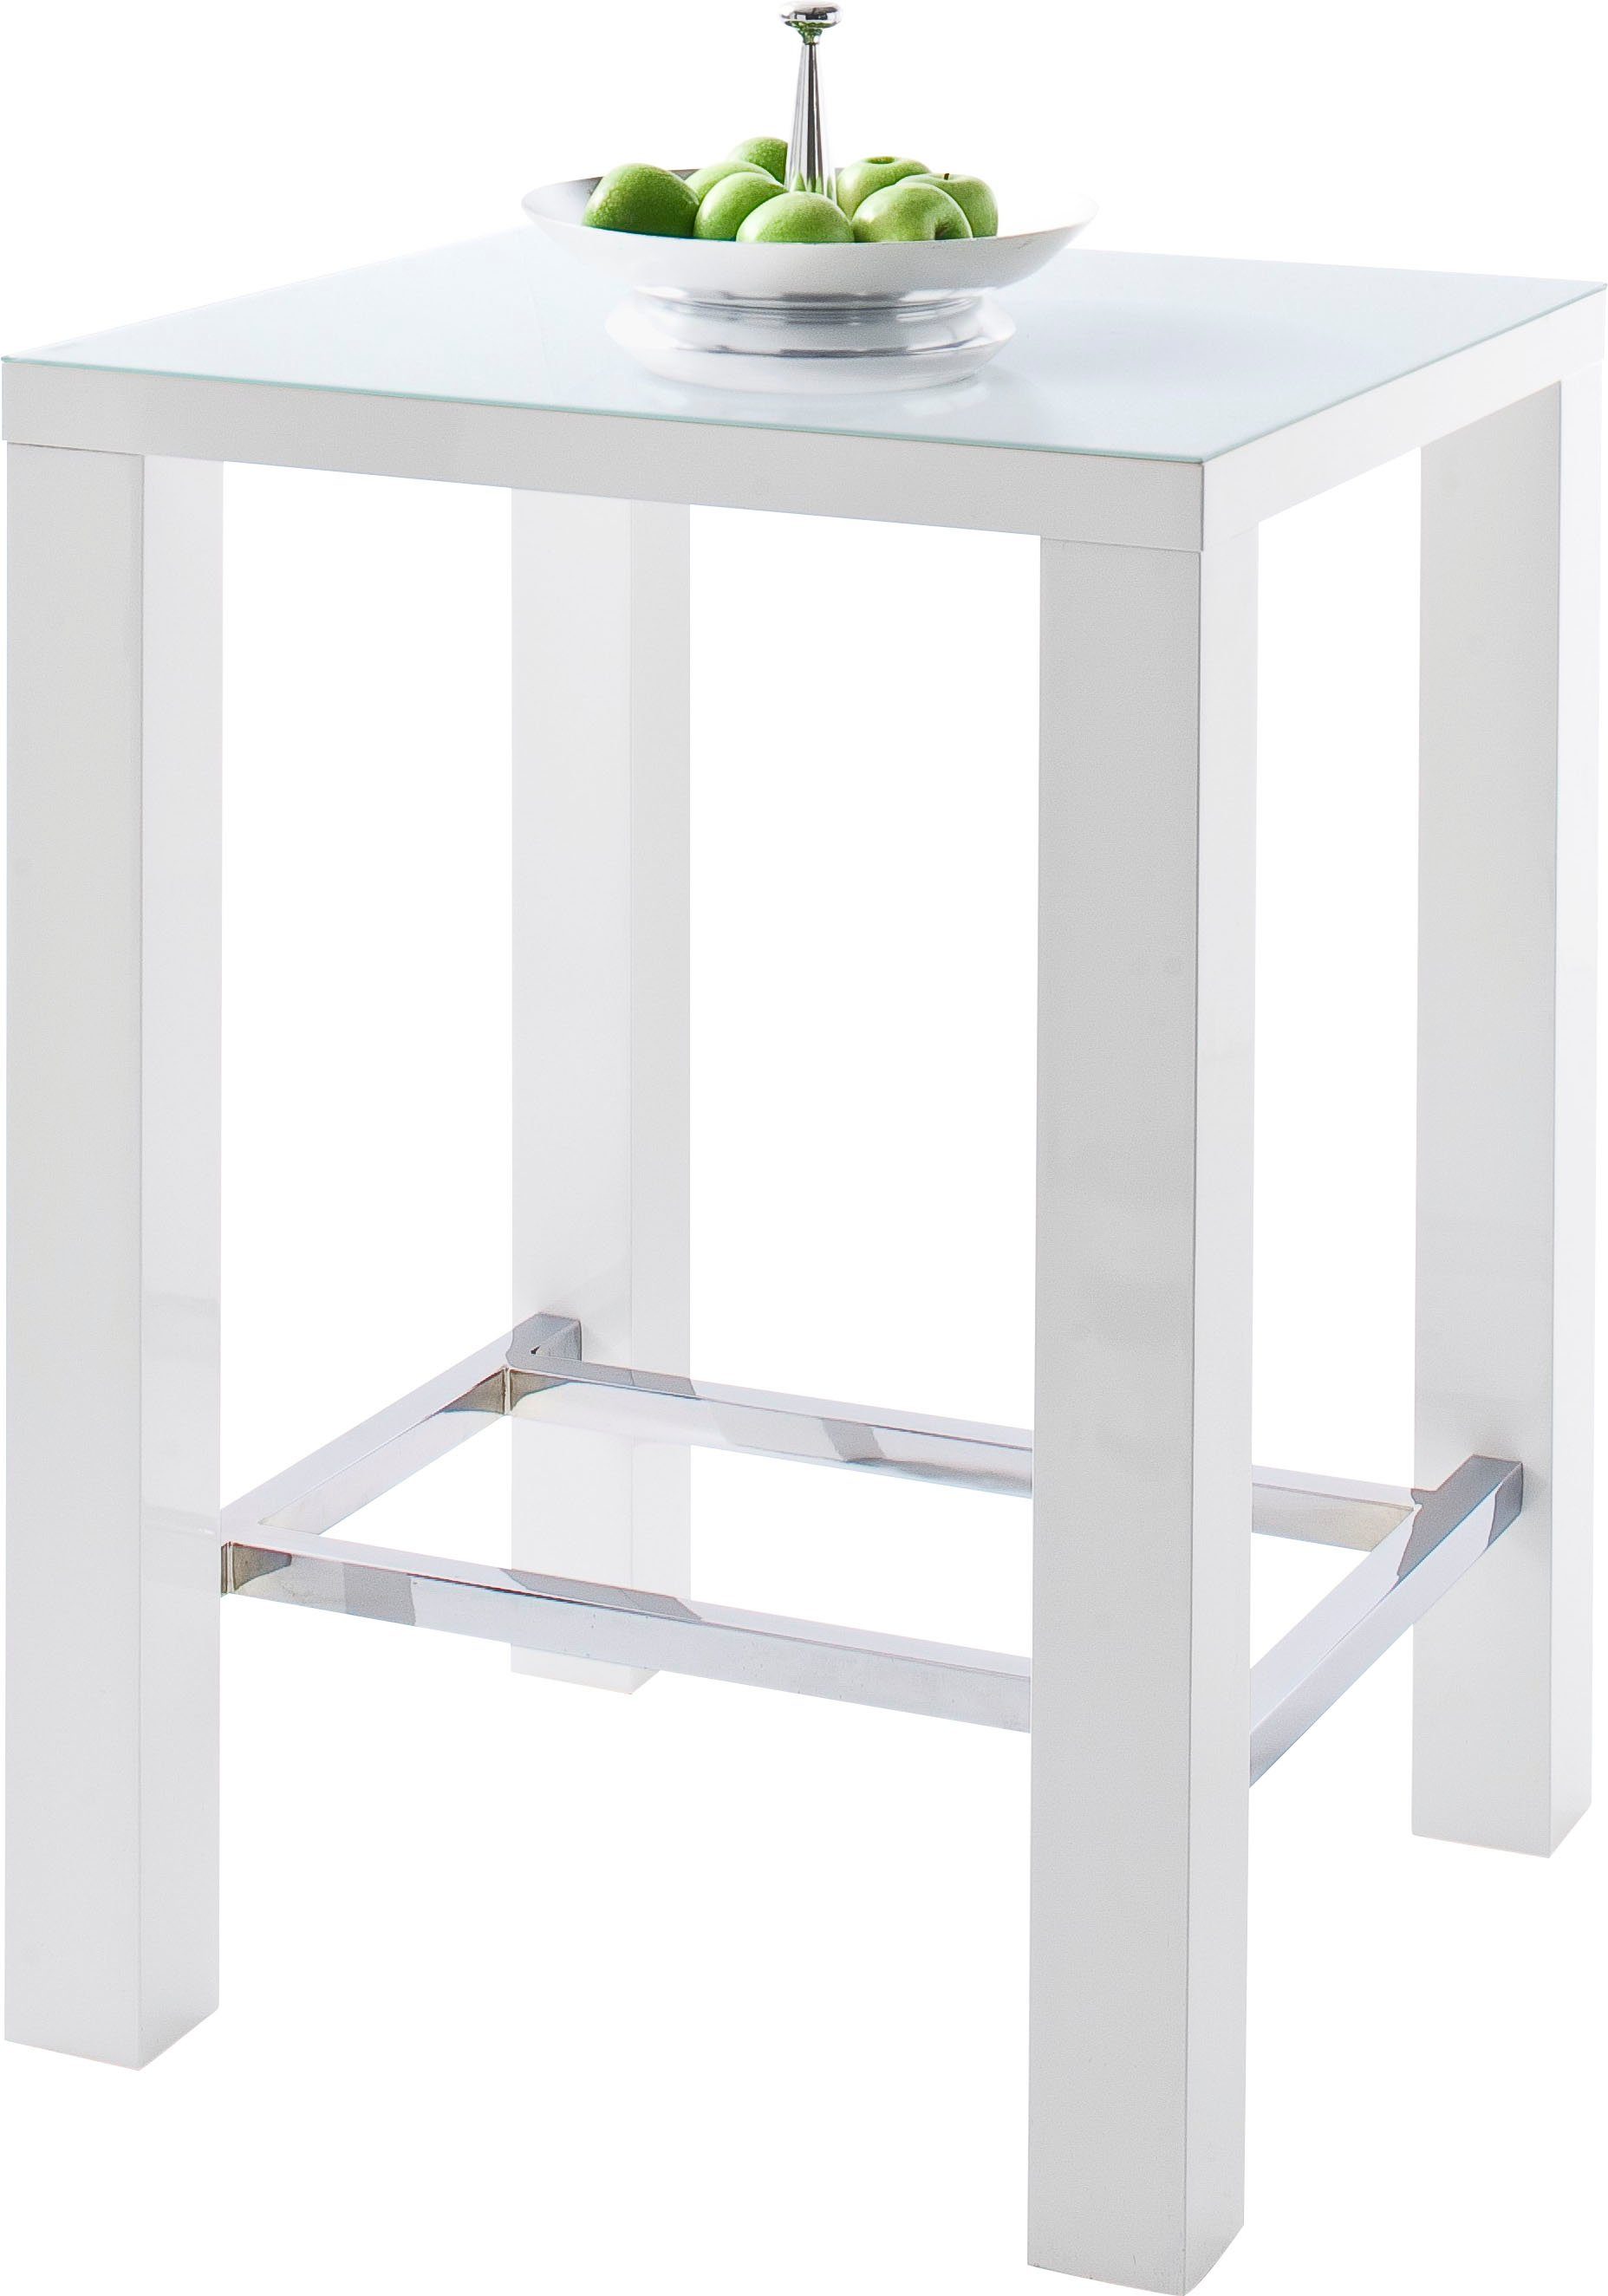 MCA furniture Bartafel hoogglans-wit, keukentafel, statafel met veiligheidsglas in de online winkel | OTTO